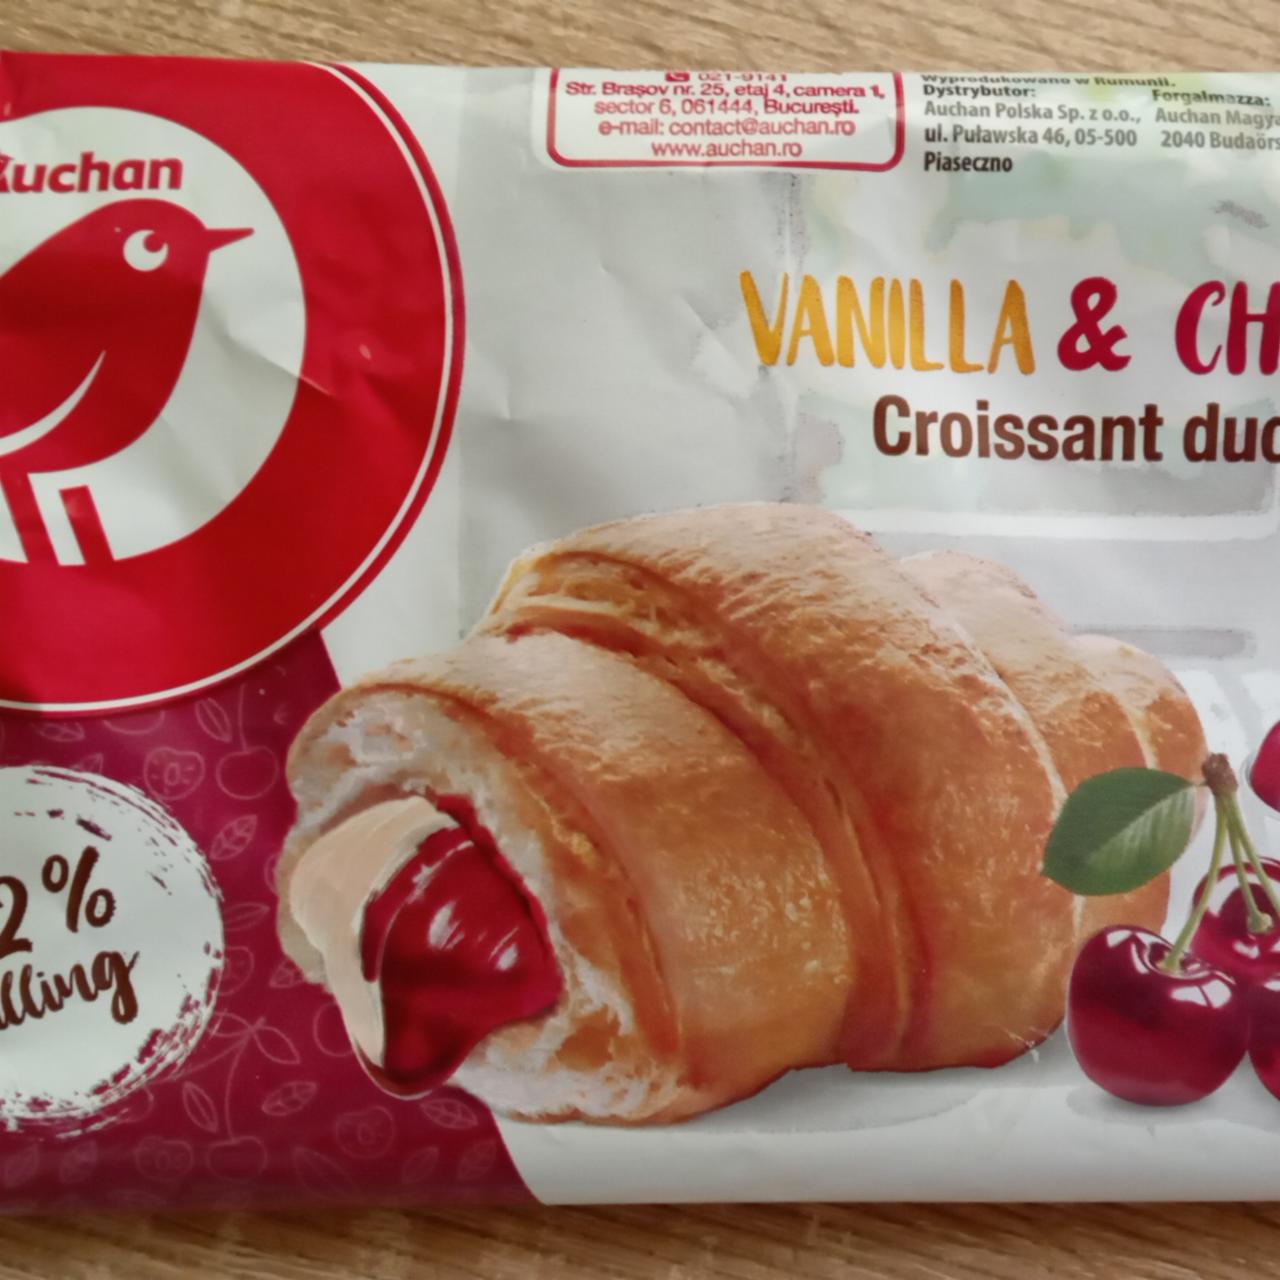 Фото - Круассан с ванильно-вишневой начинкой Auchan